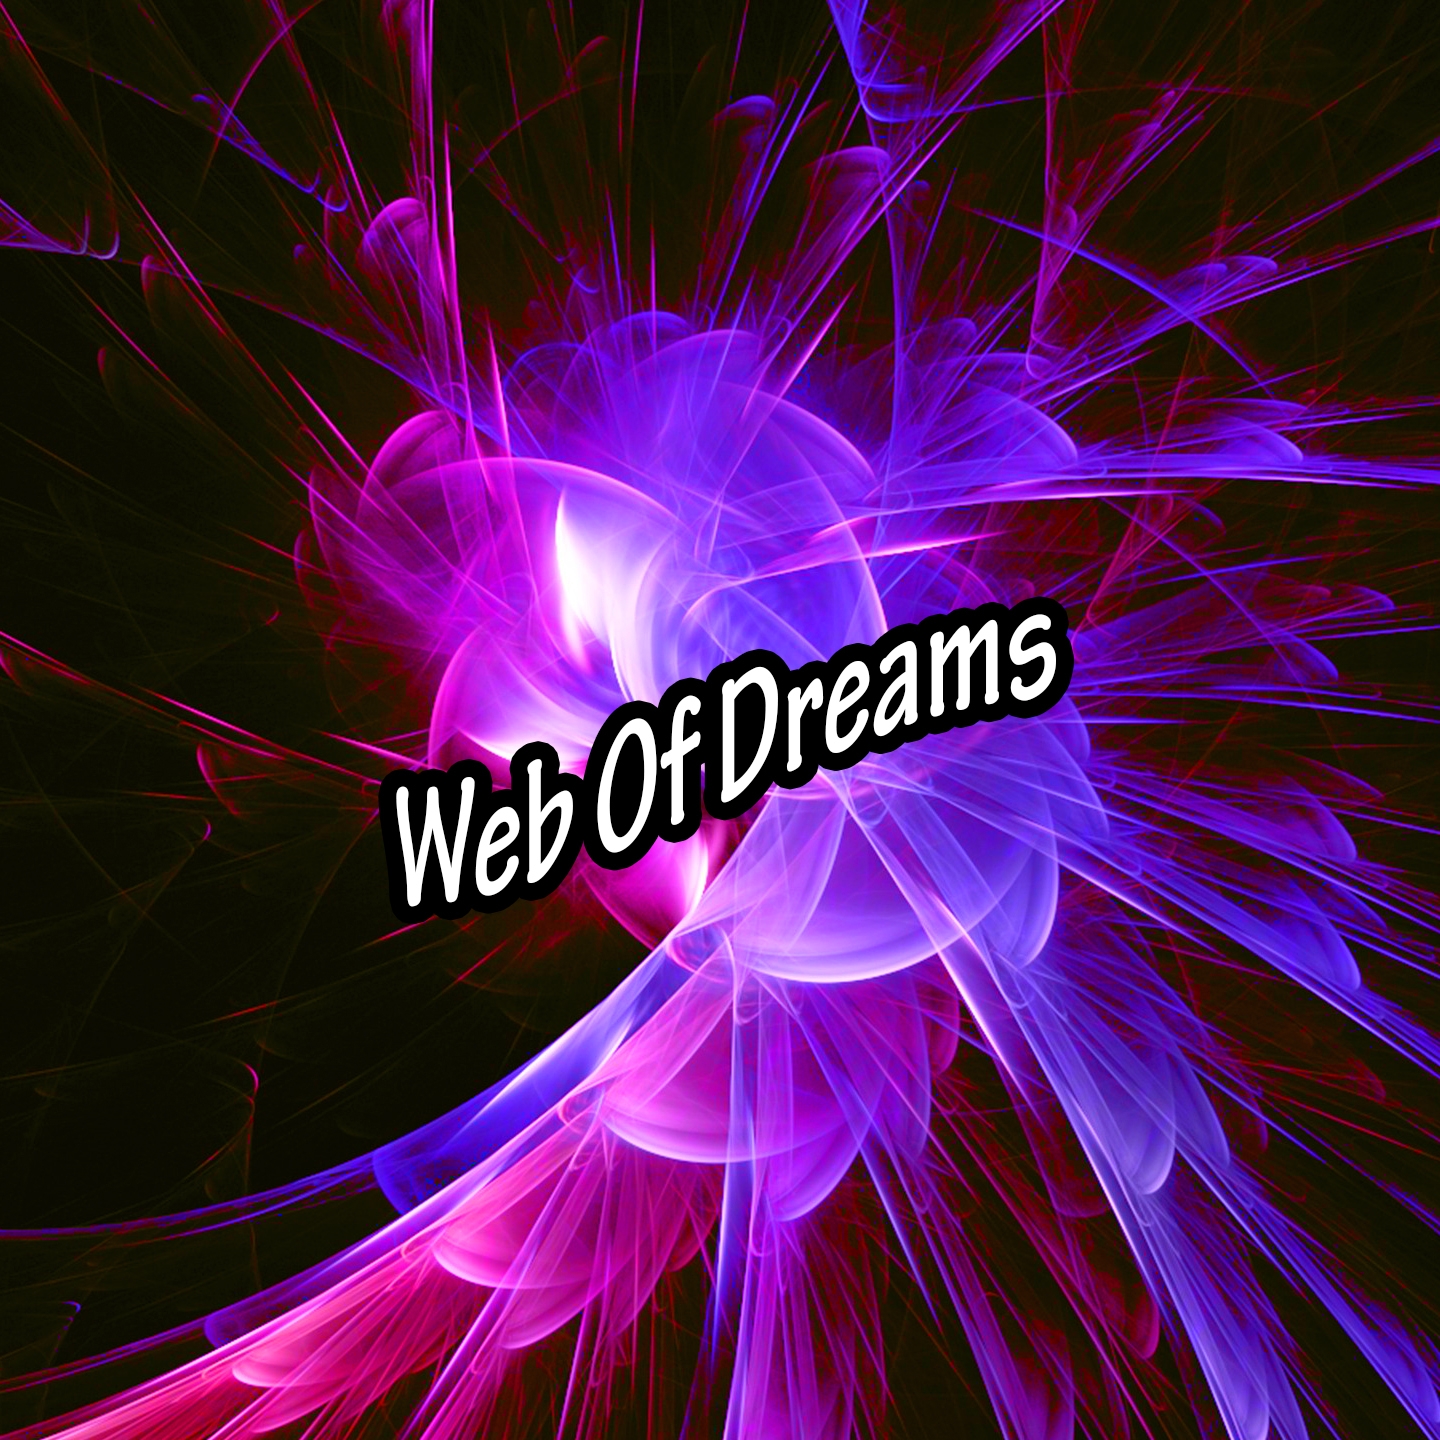 Web Of Dreams